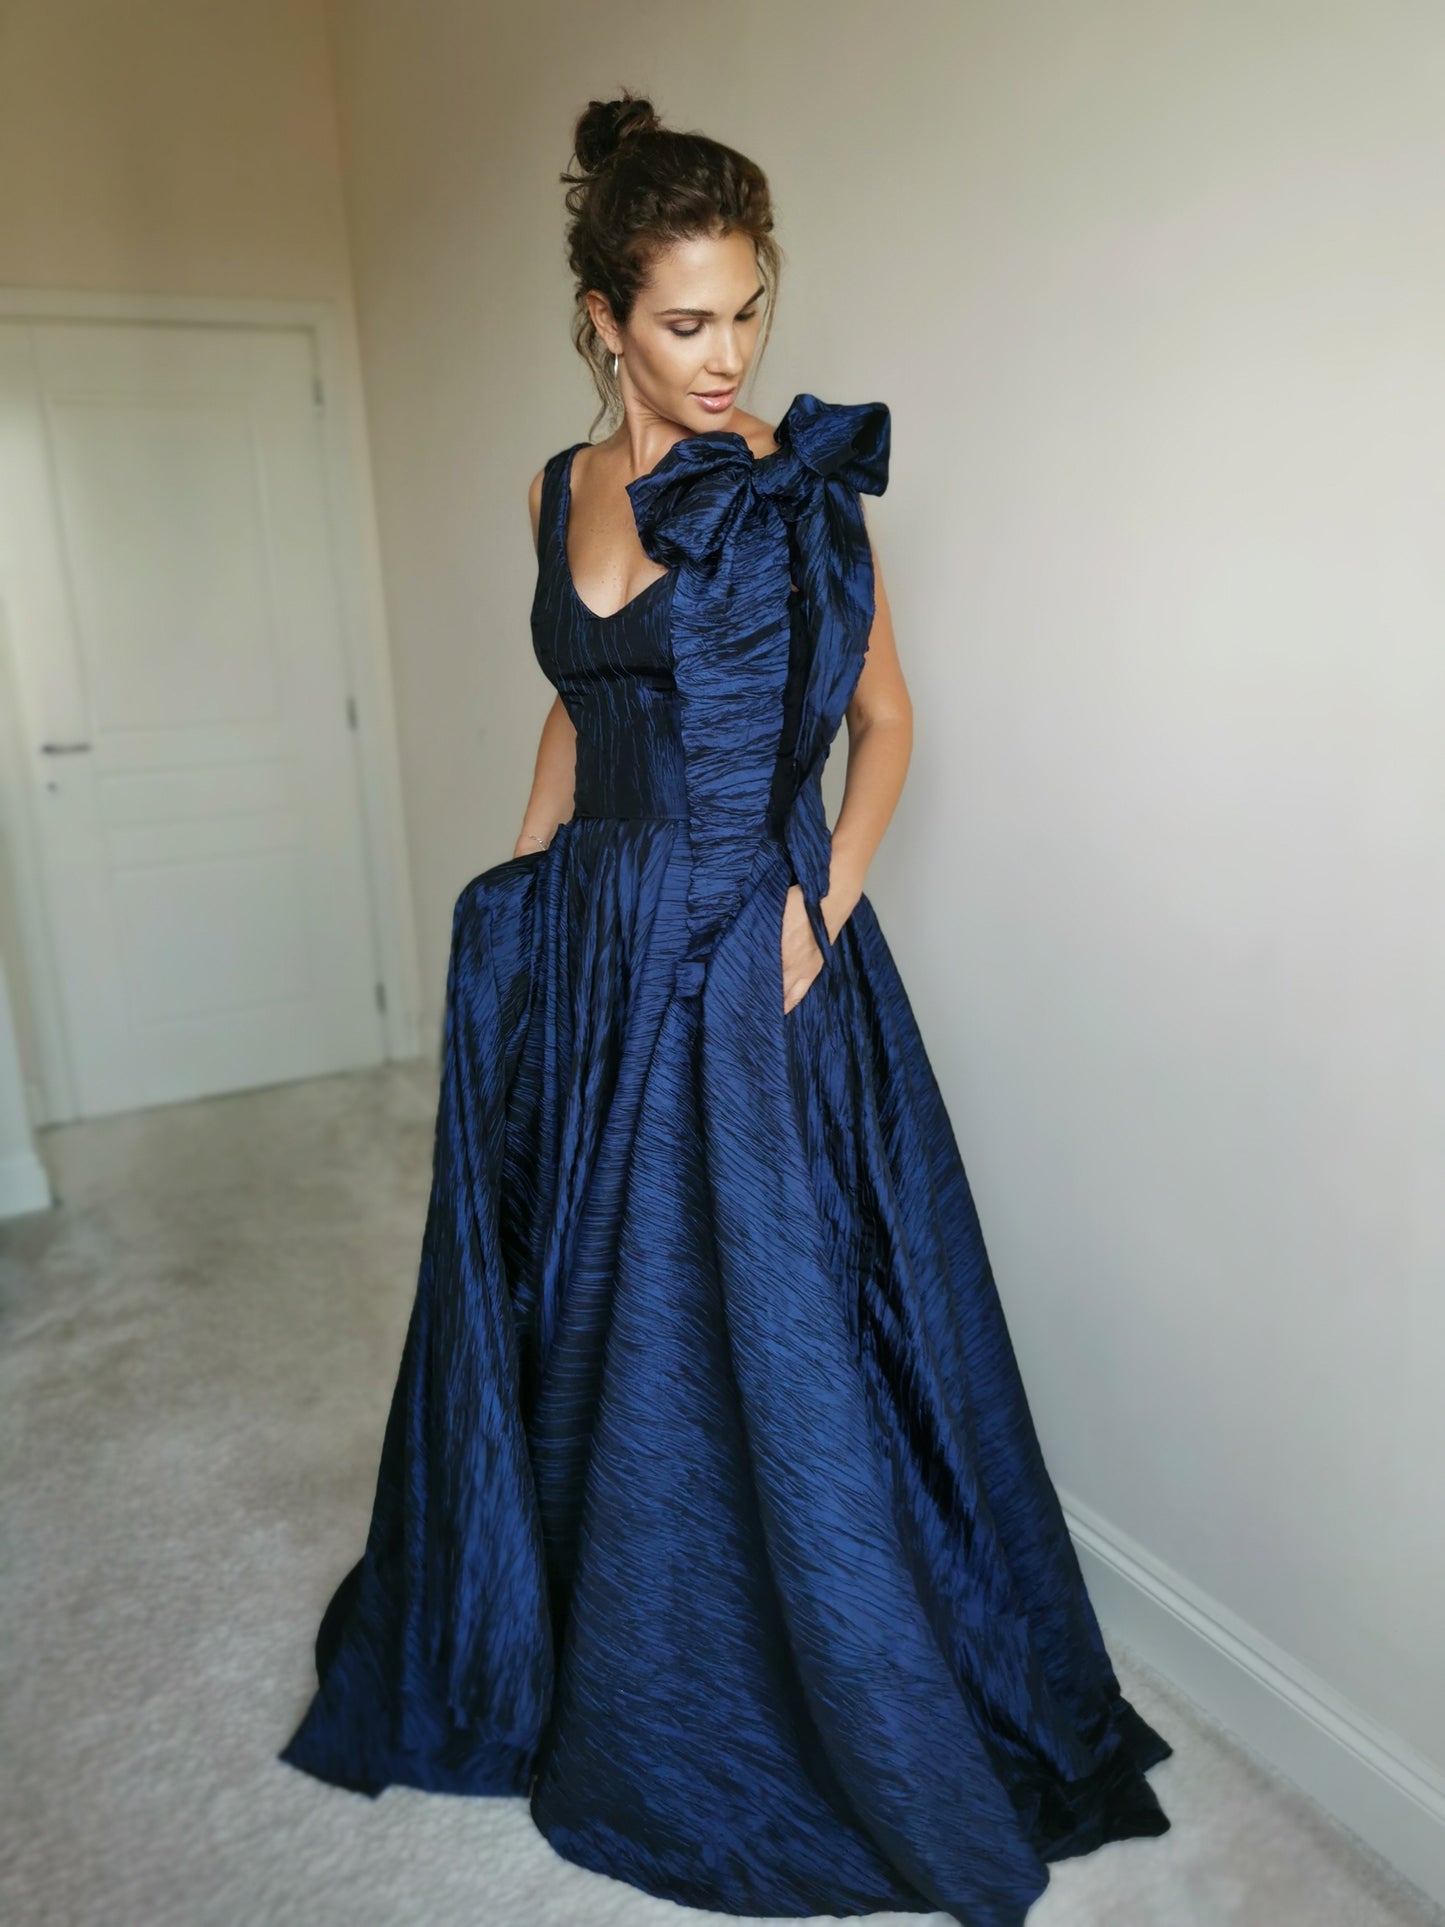 Midnight blue taffeta dress